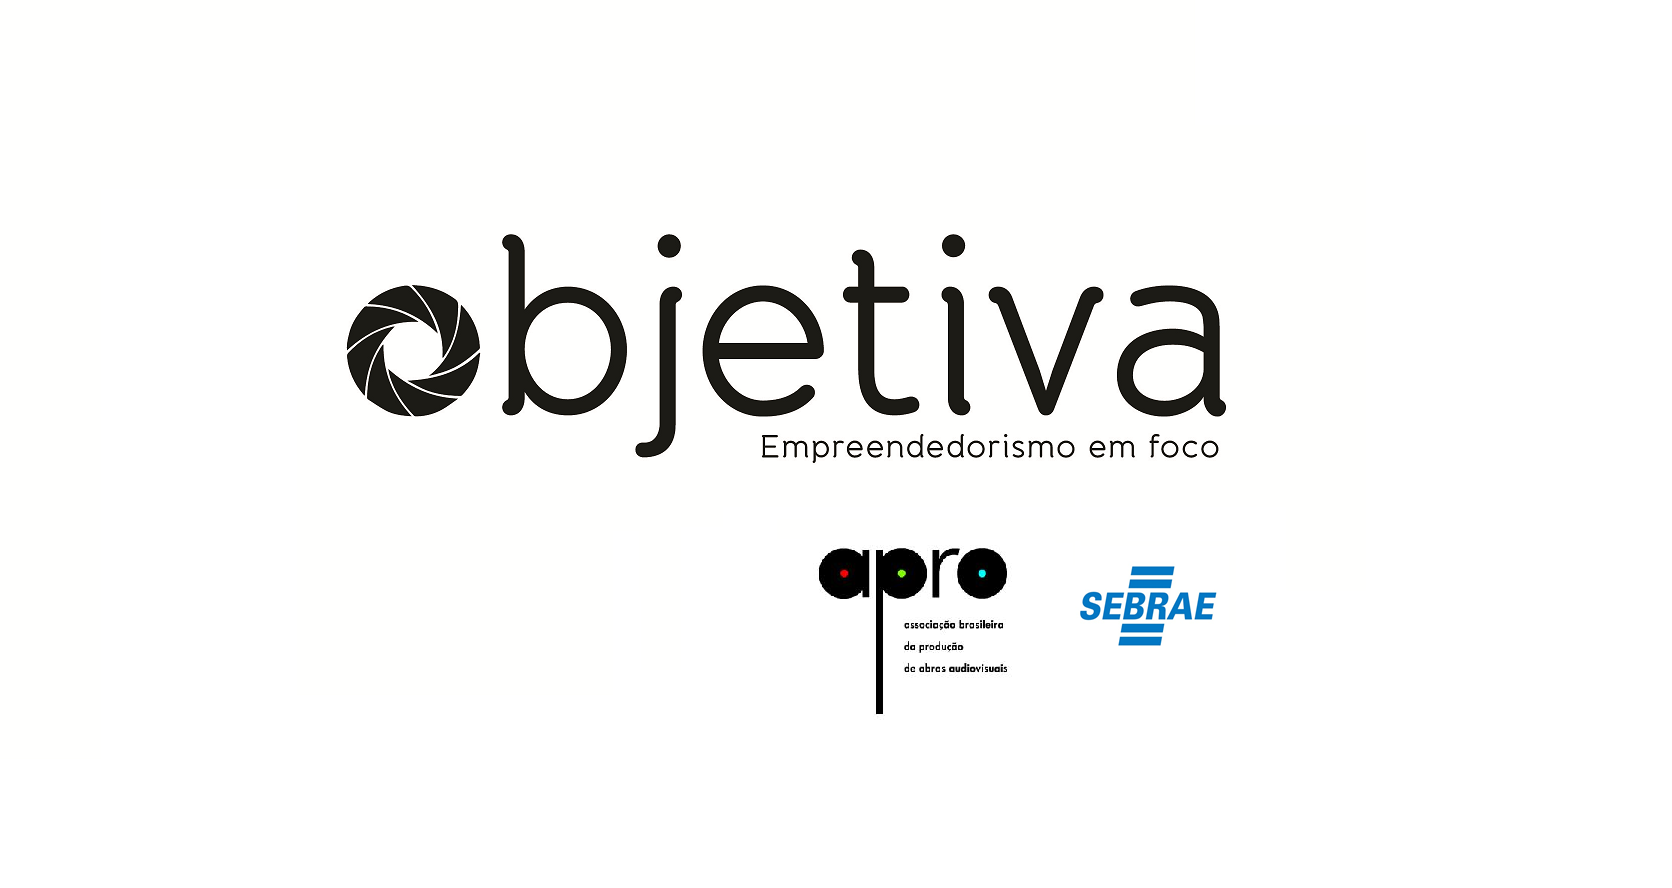 APRO e SEBRAE promovem módulo “Transmídia e Inovação” em Recife